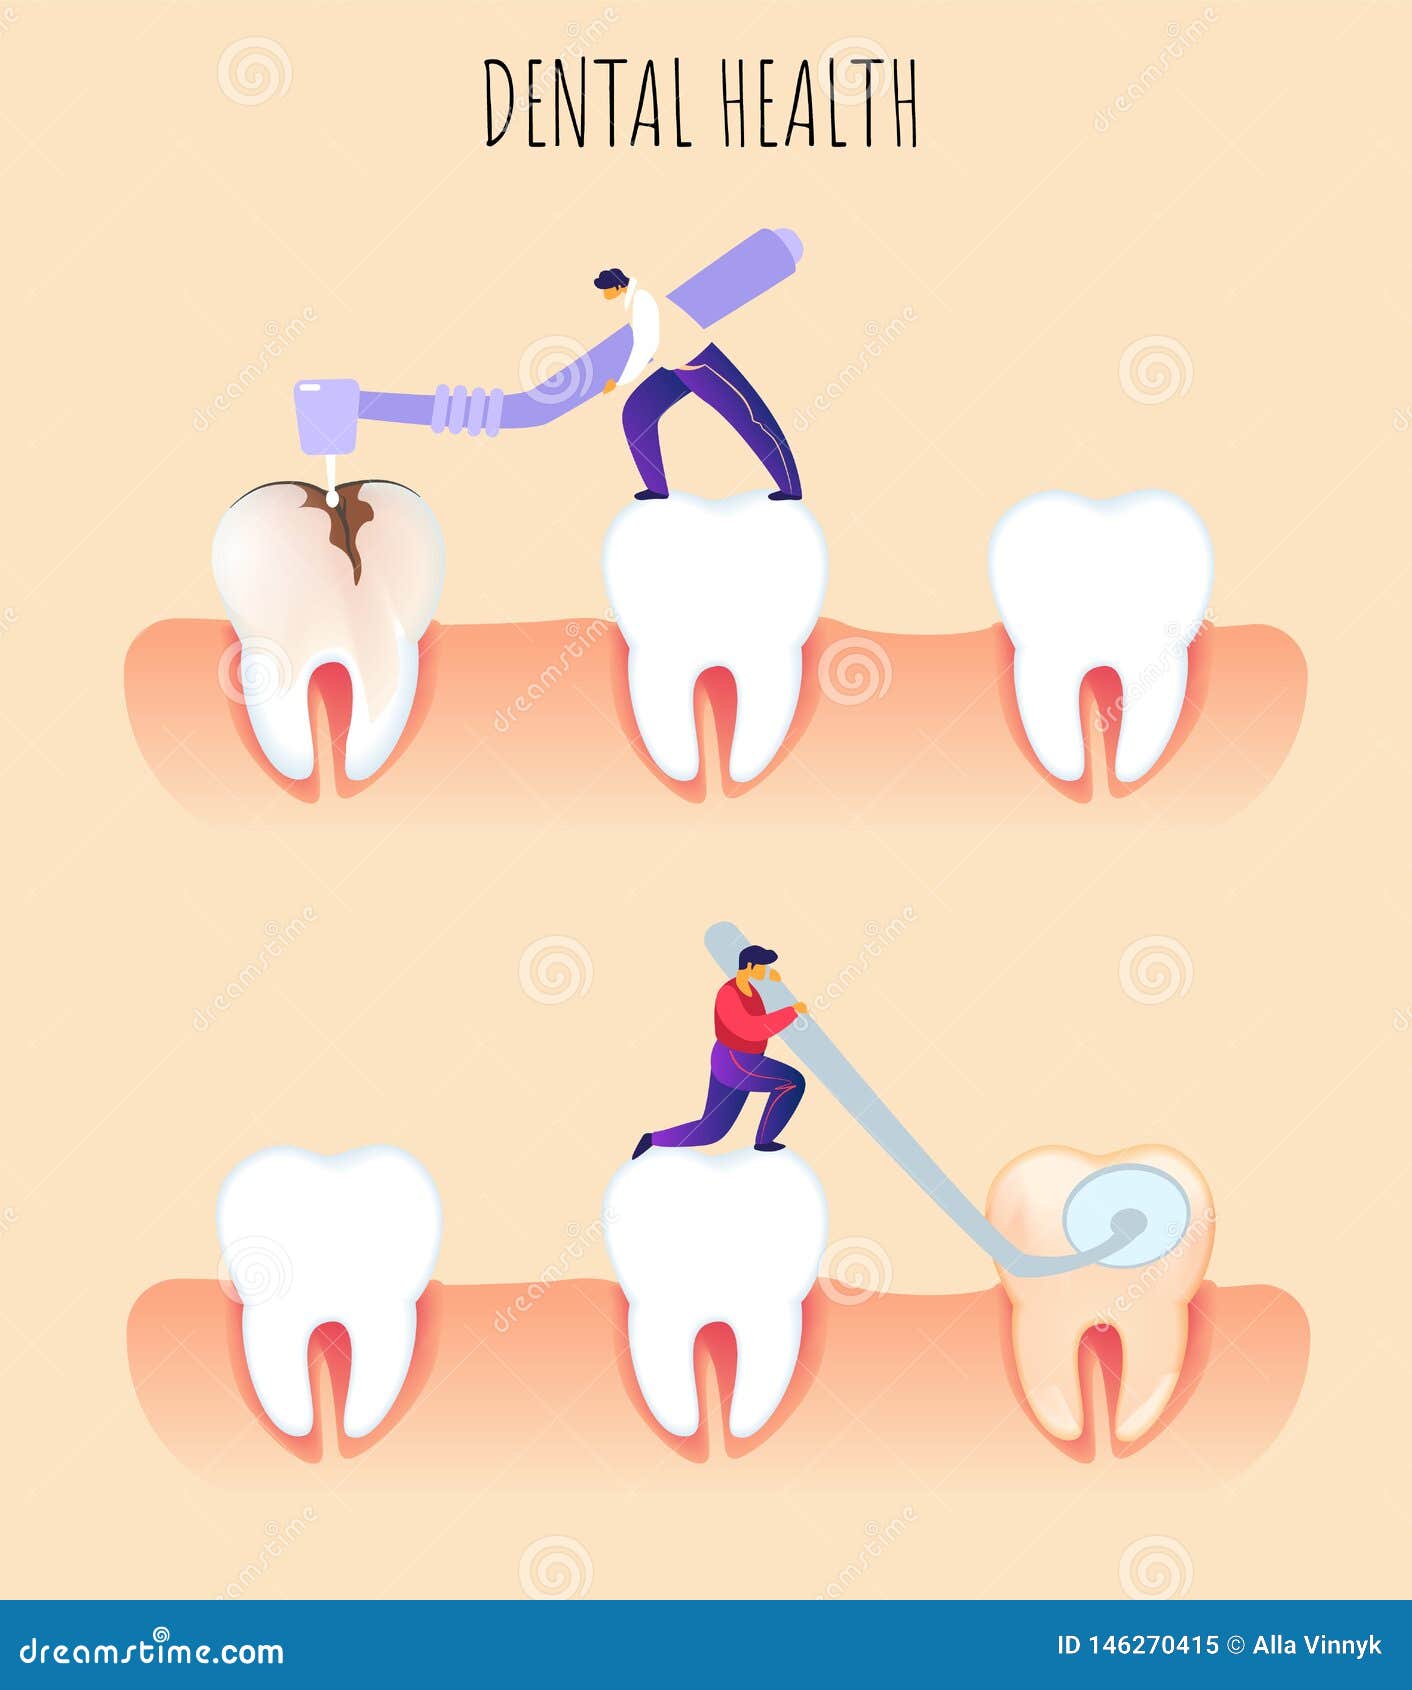 flat banner dental health prevention dentistry.